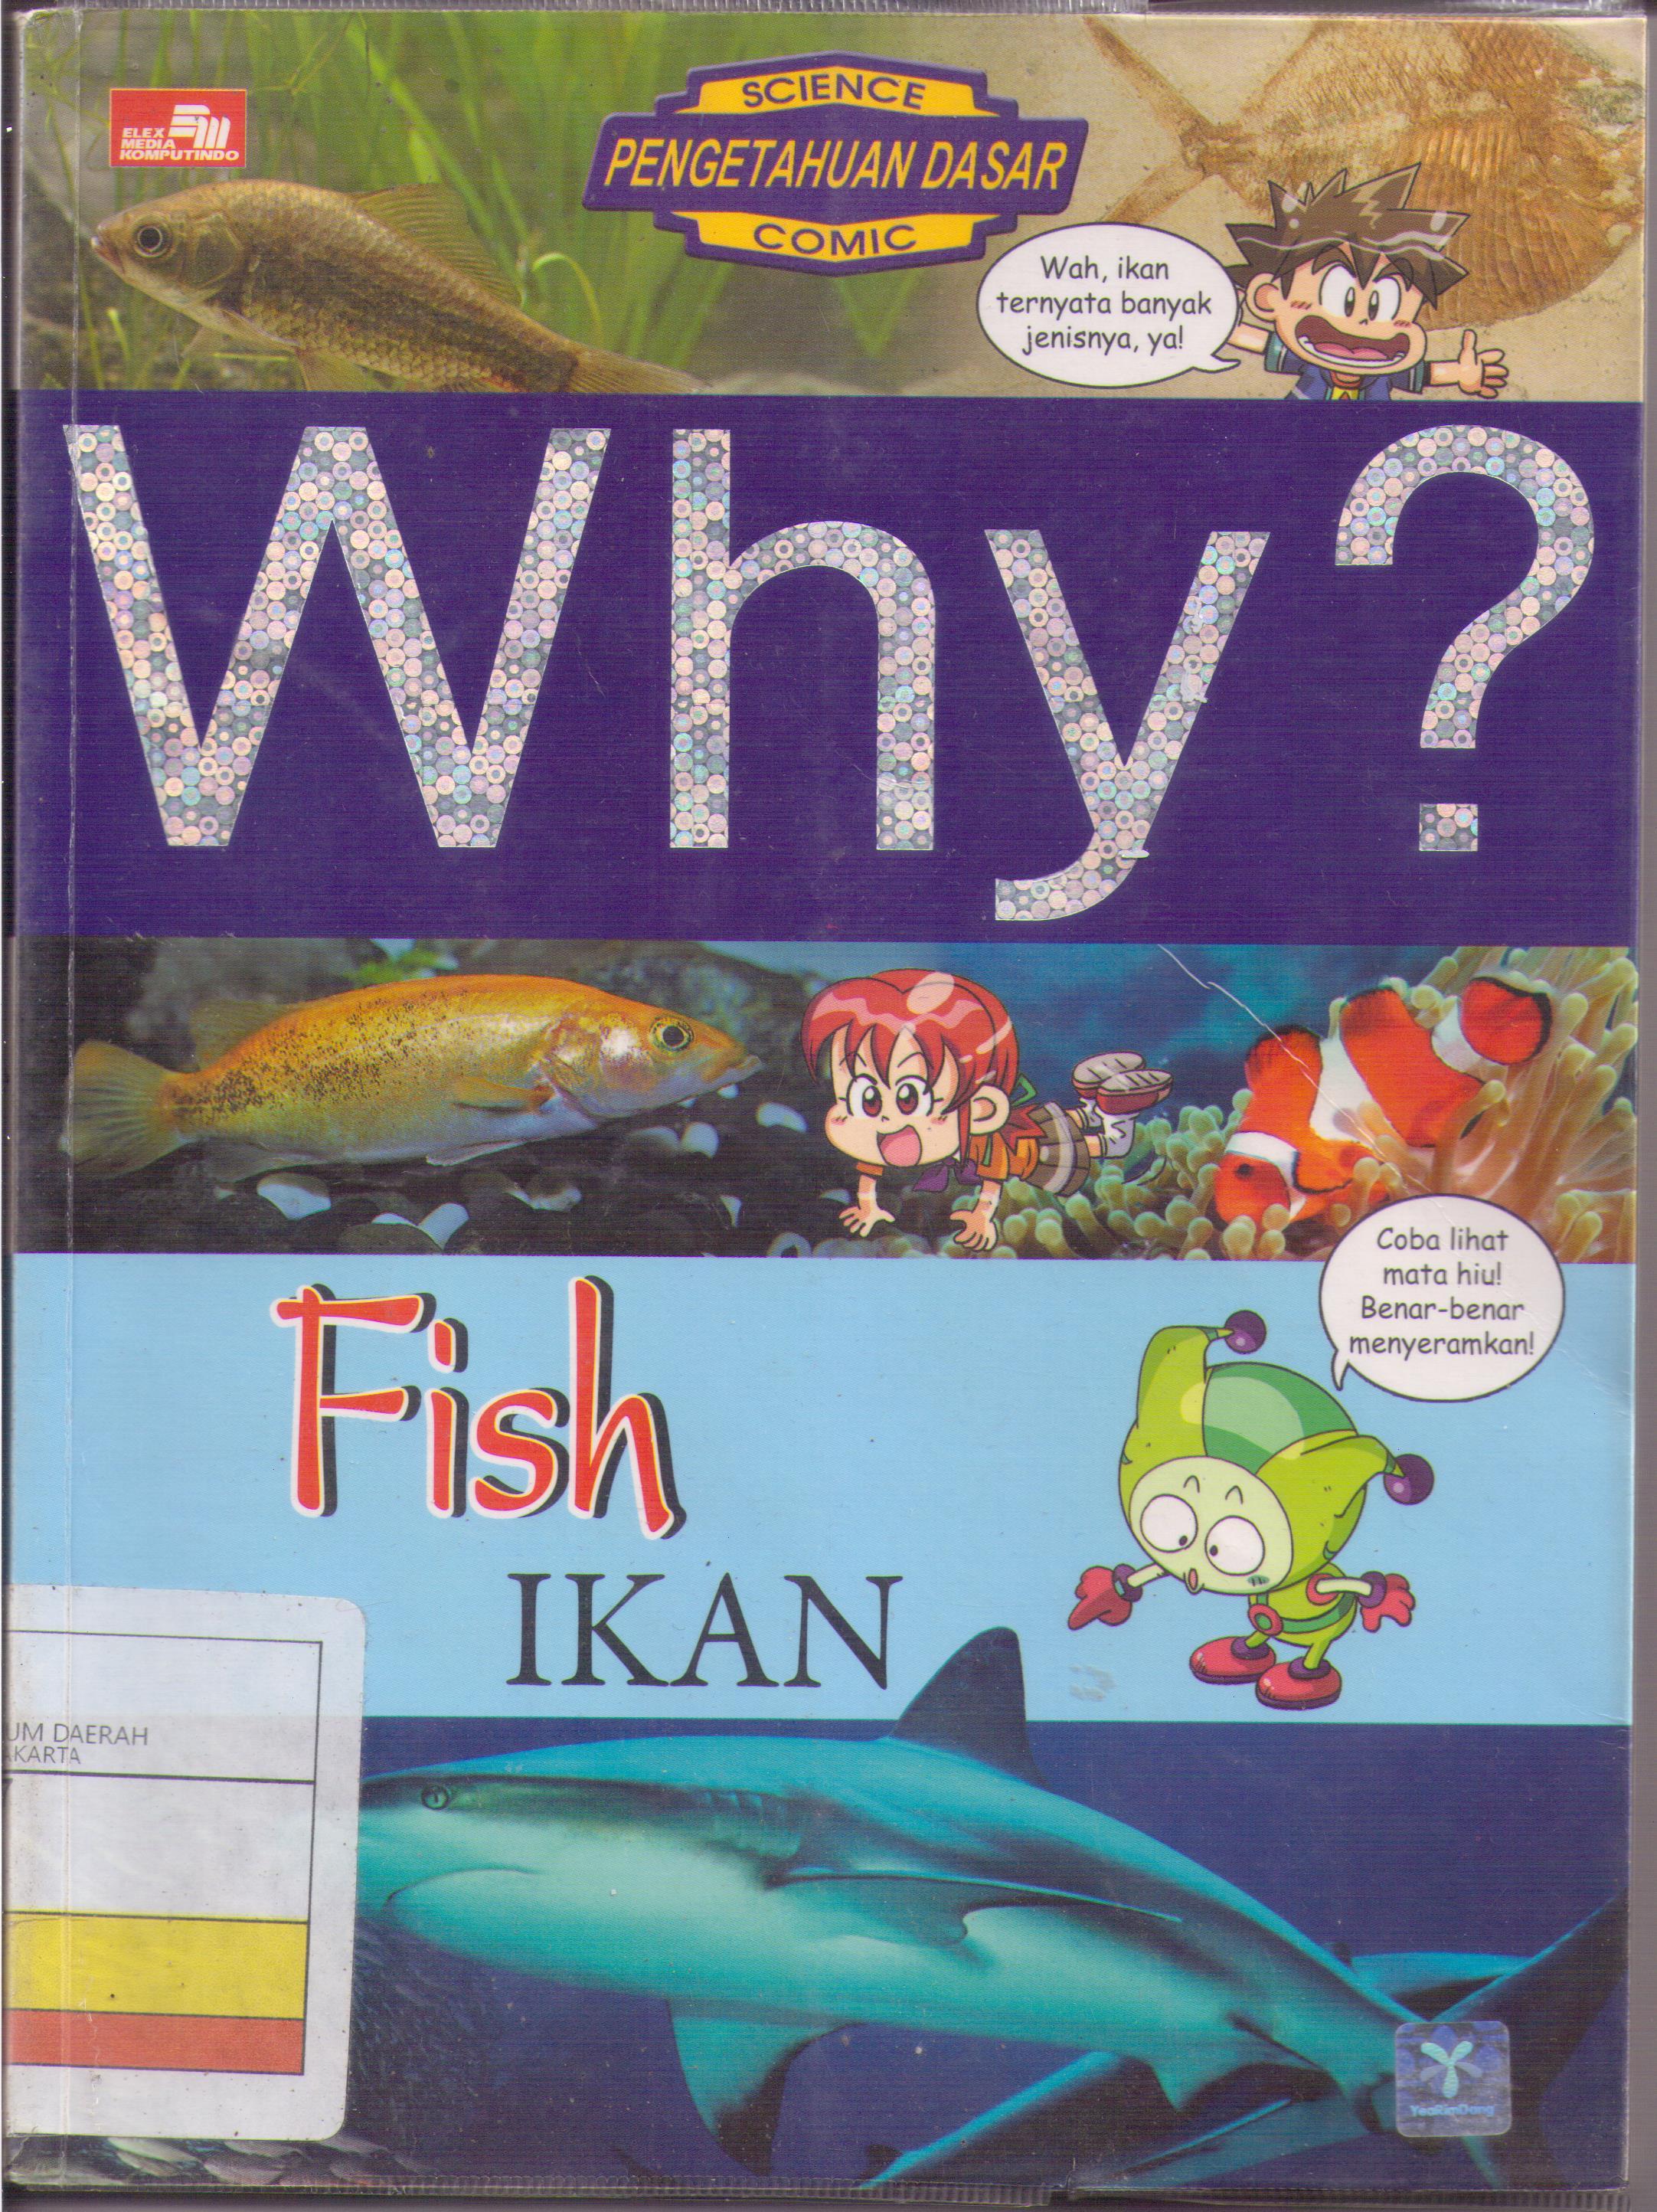 Why? fish = :  ikan